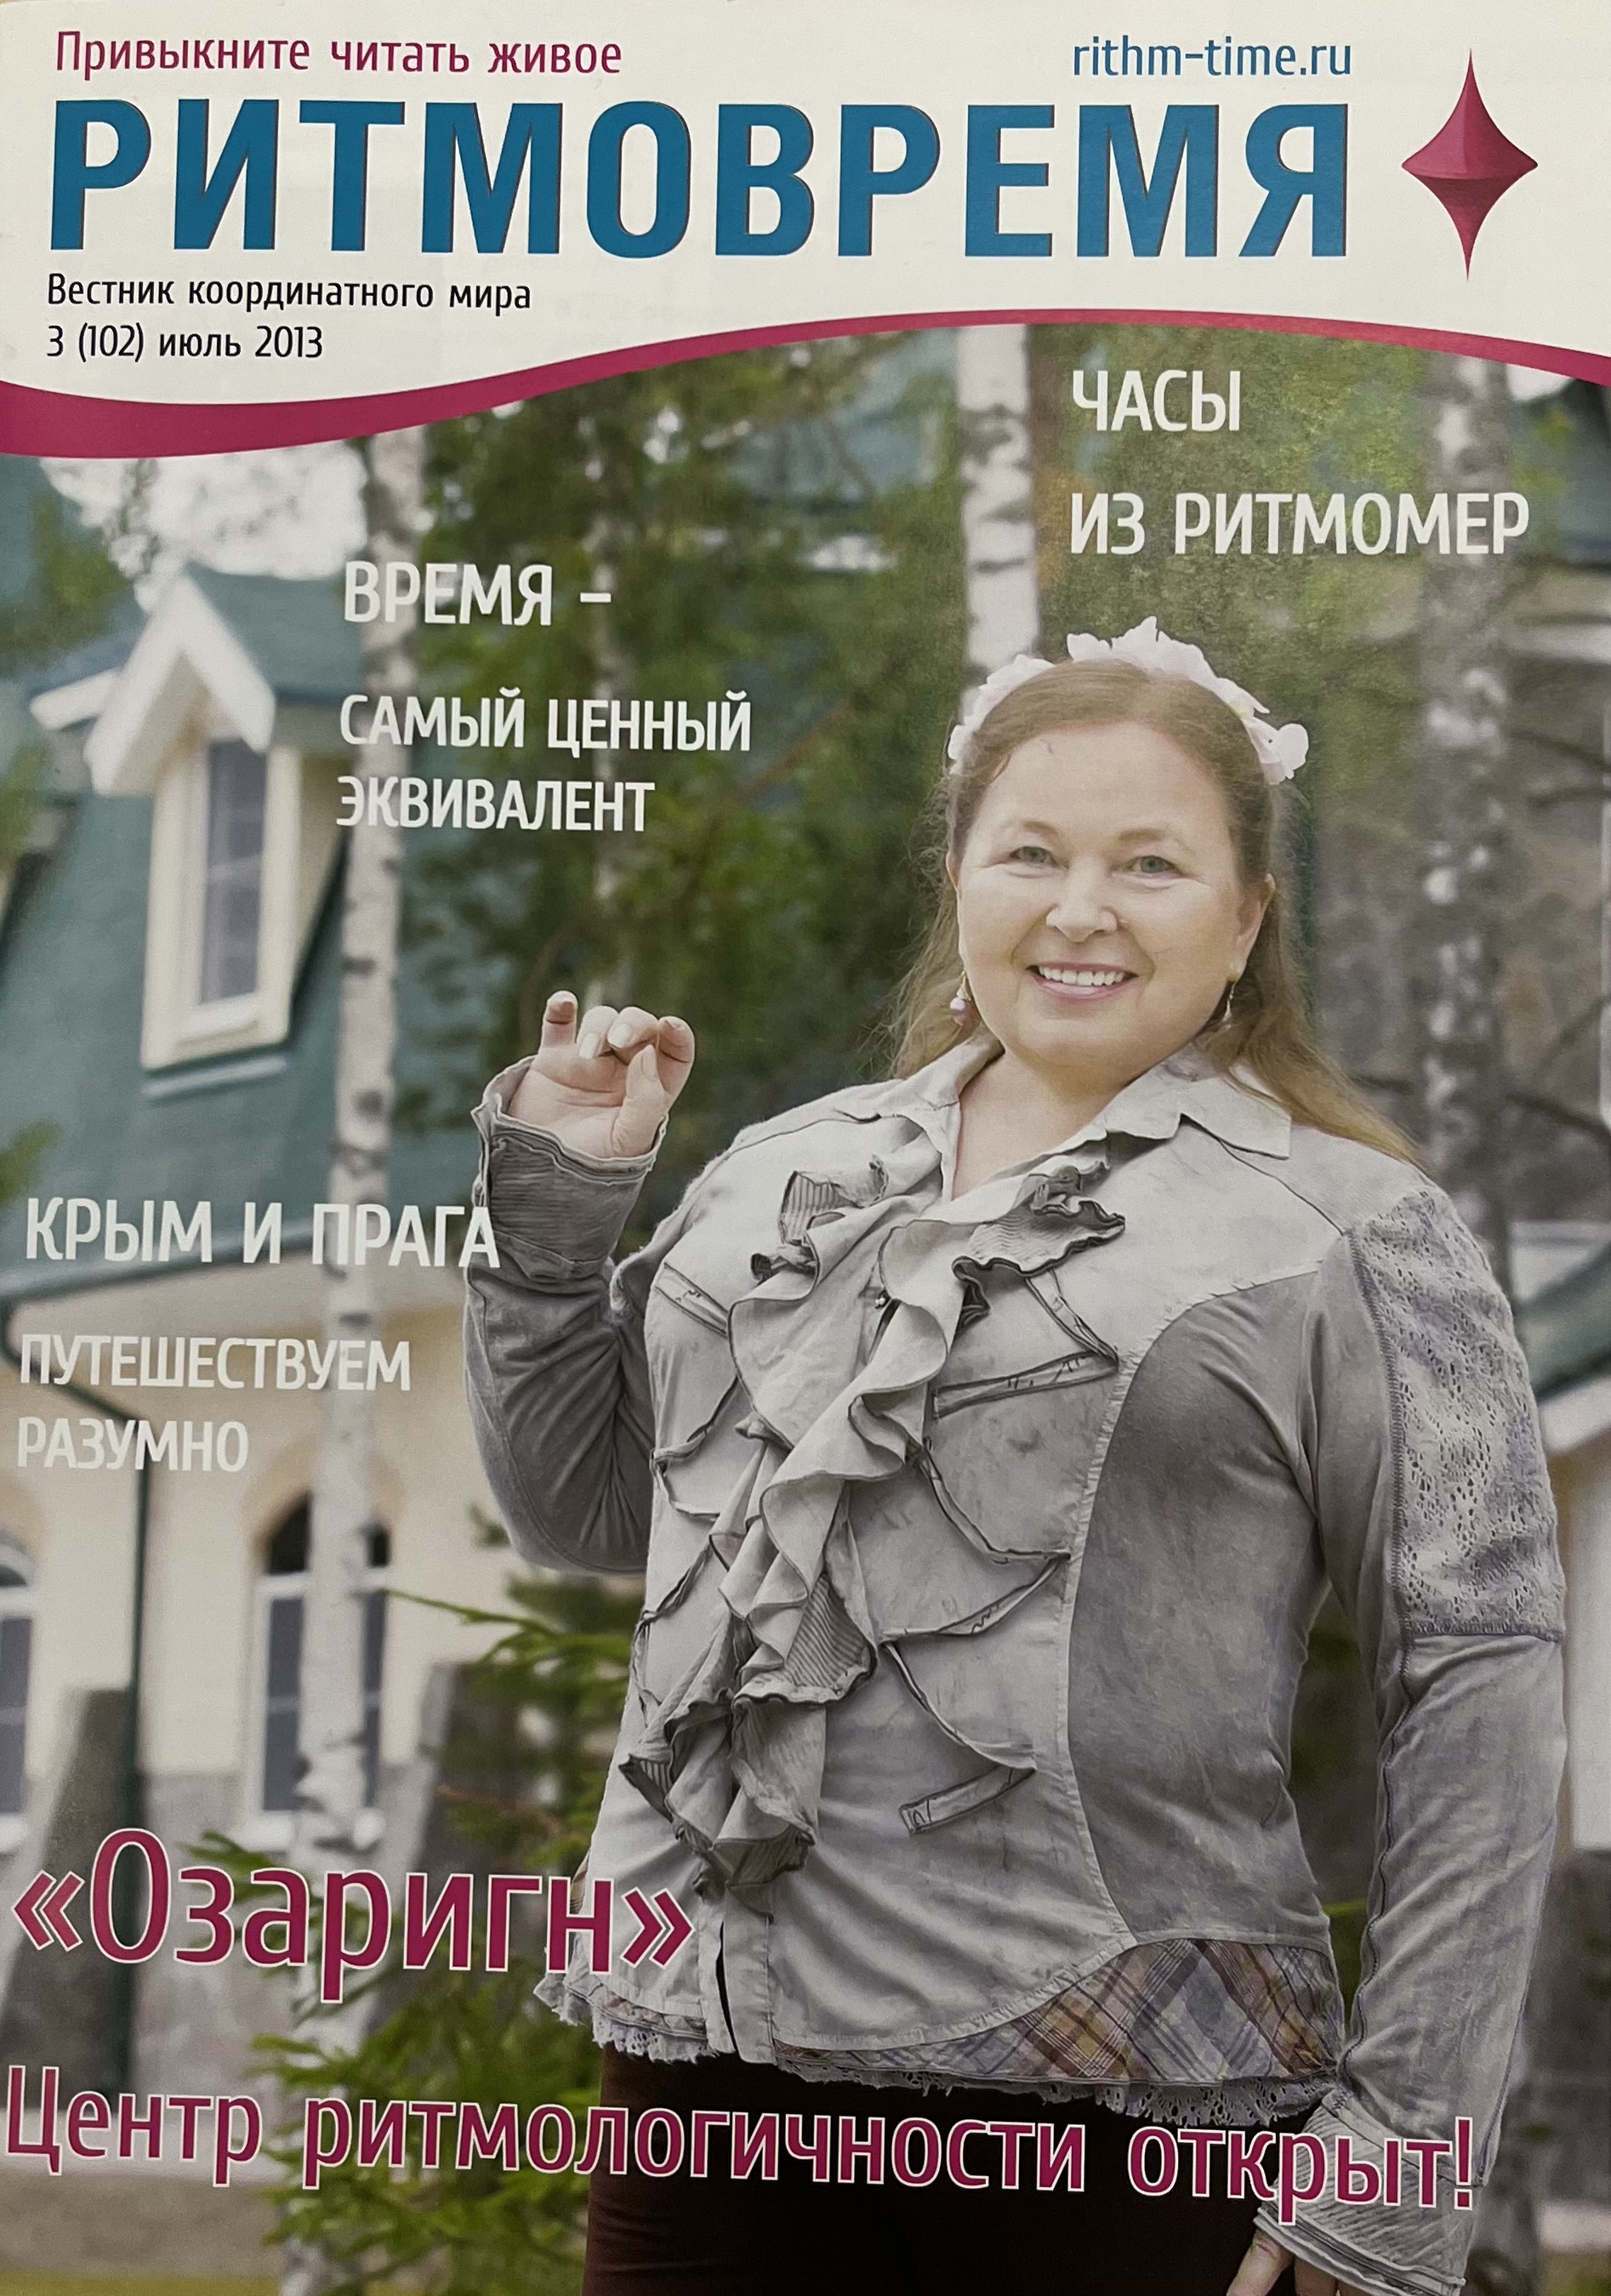 РИТМОВРЕМЯ  Вестник координатного мира №102 июль 2013